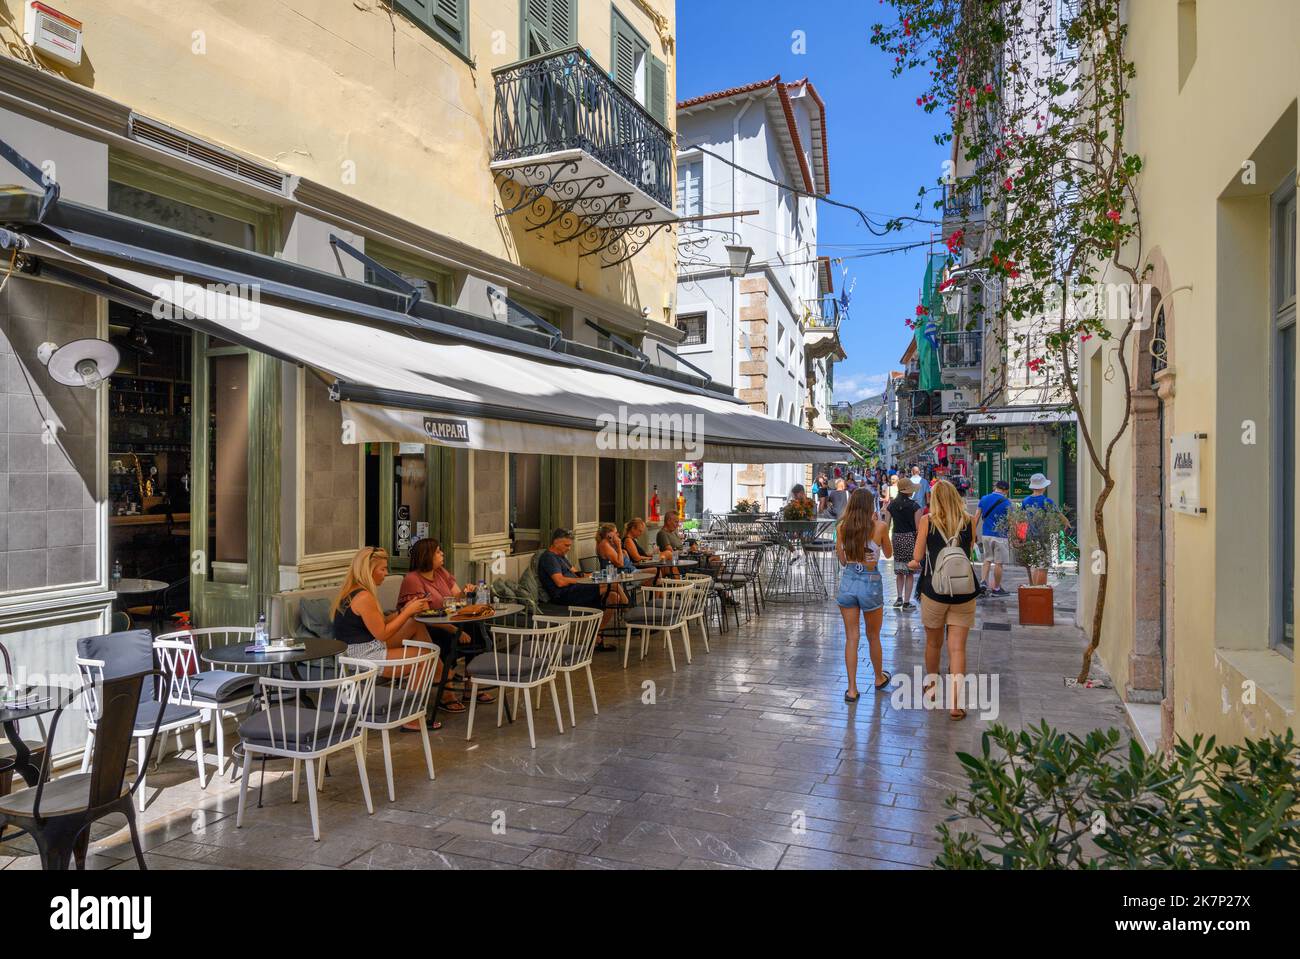 Café / taverne dans une rue de la vieille ville, Nafplio (Nafplion), Péloponnèse, Grèce Banque D'Images